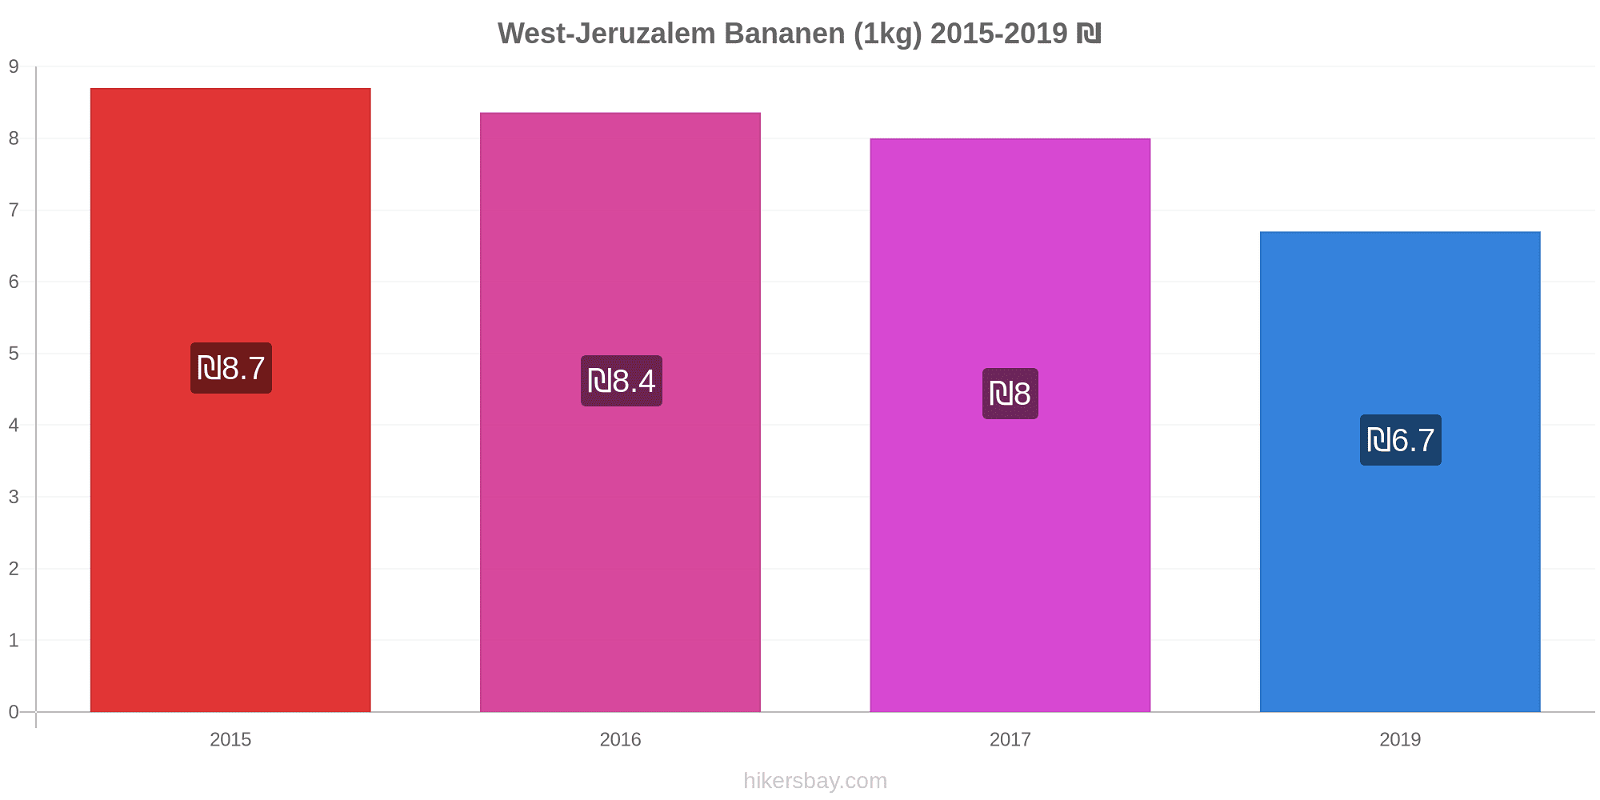 West-Jeruzalem prijswijzigingen Banaan (1kg) hikersbay.com